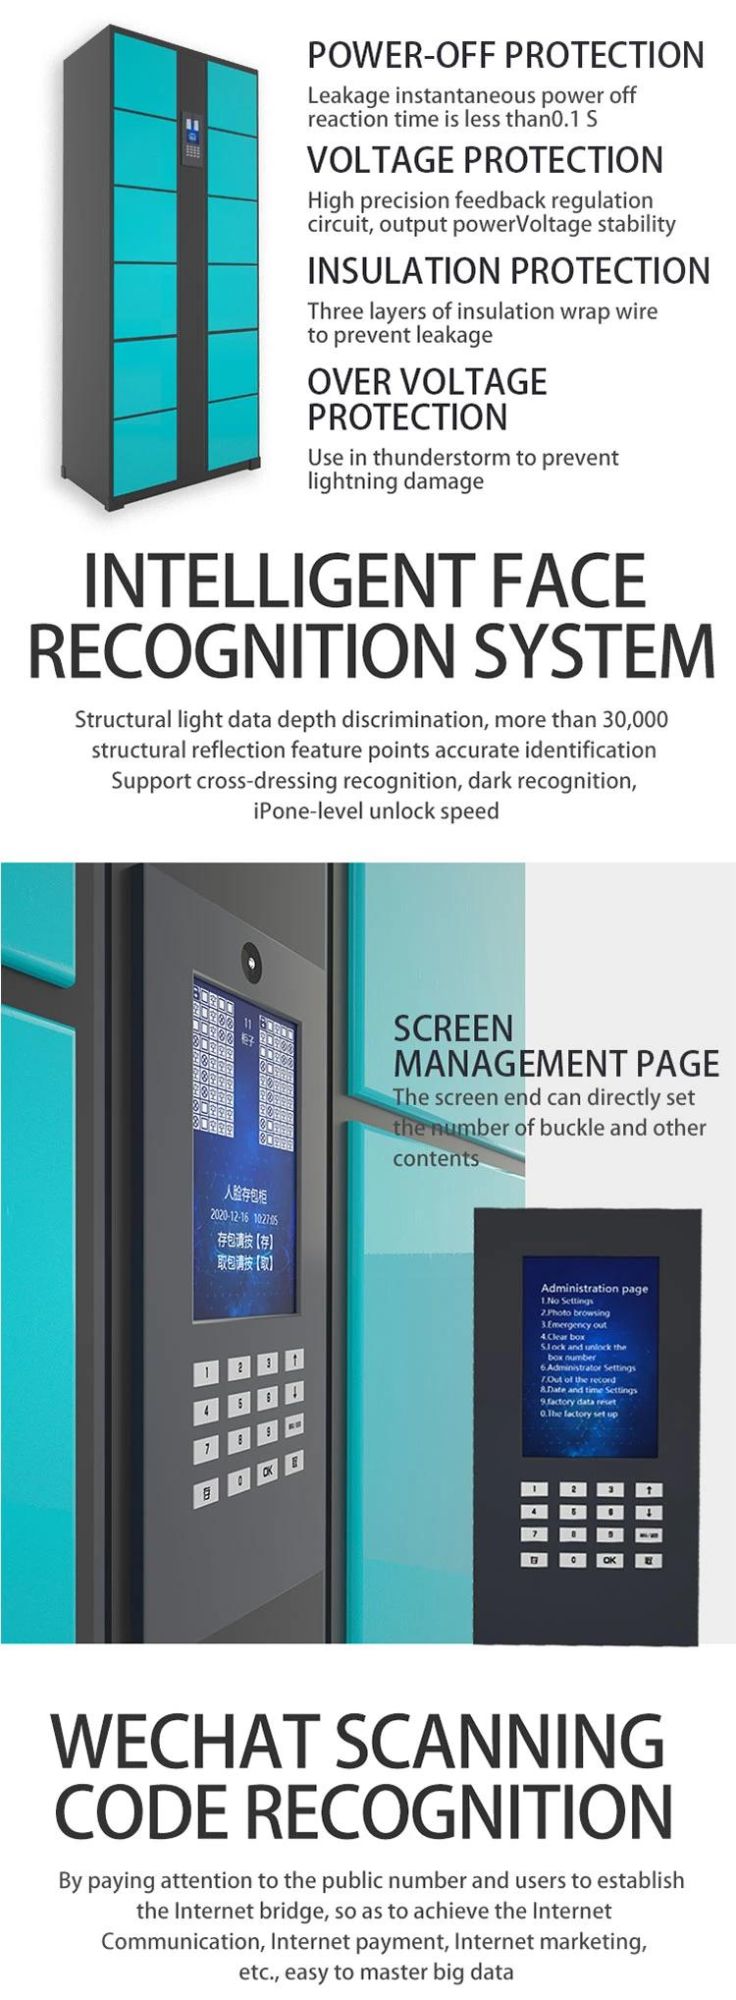 Fingerprint Identification Steel Automatic Locker Metal Electronic Cabinet Digital Locker